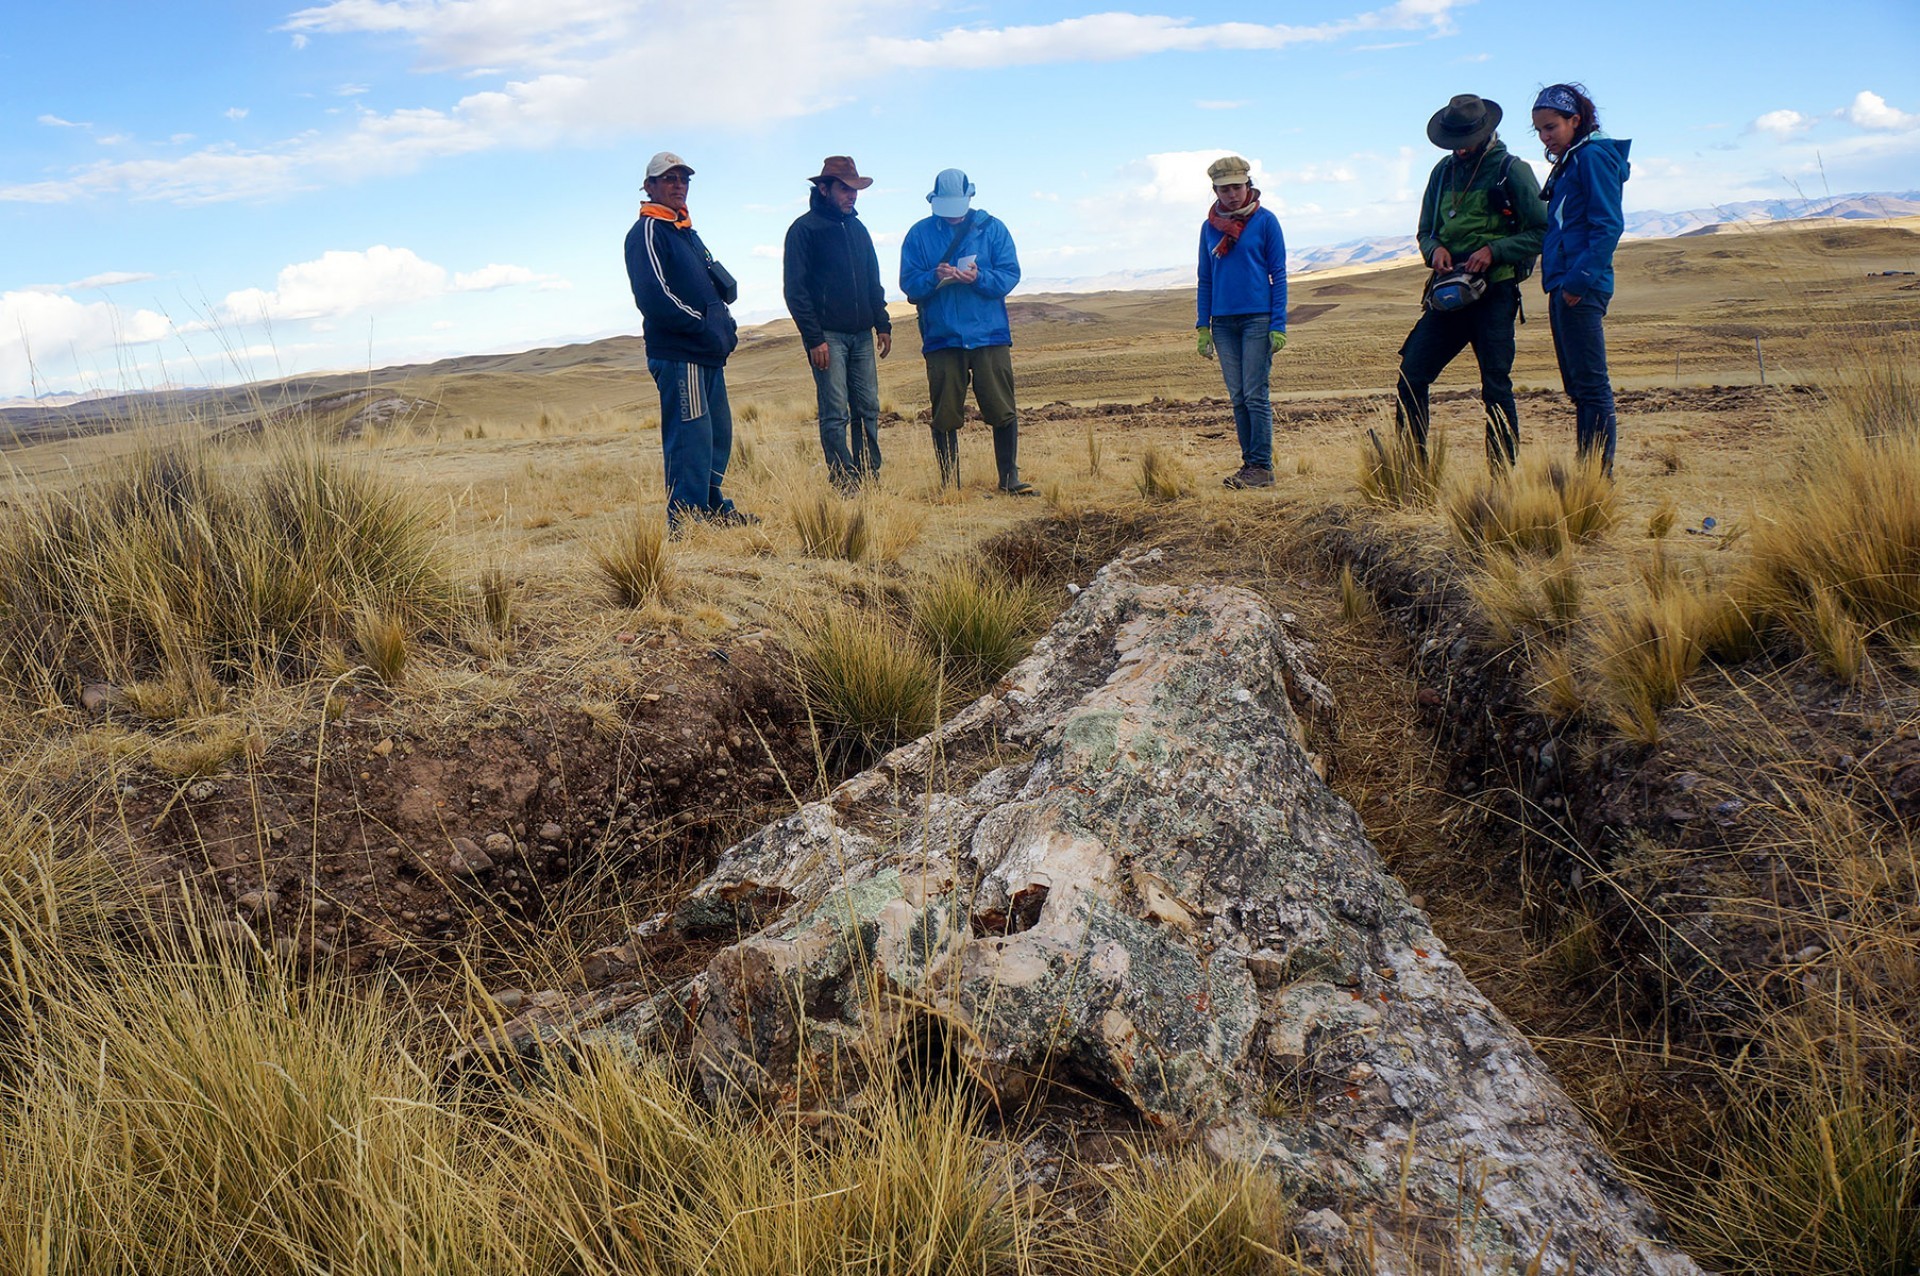 Tronco de árvore no Peru mostra mudanças climáticas dos últimos 10 milhões de anos (Foto: Rodolfo Salas Gismondi/Smithsonian Tropical Research Institute)